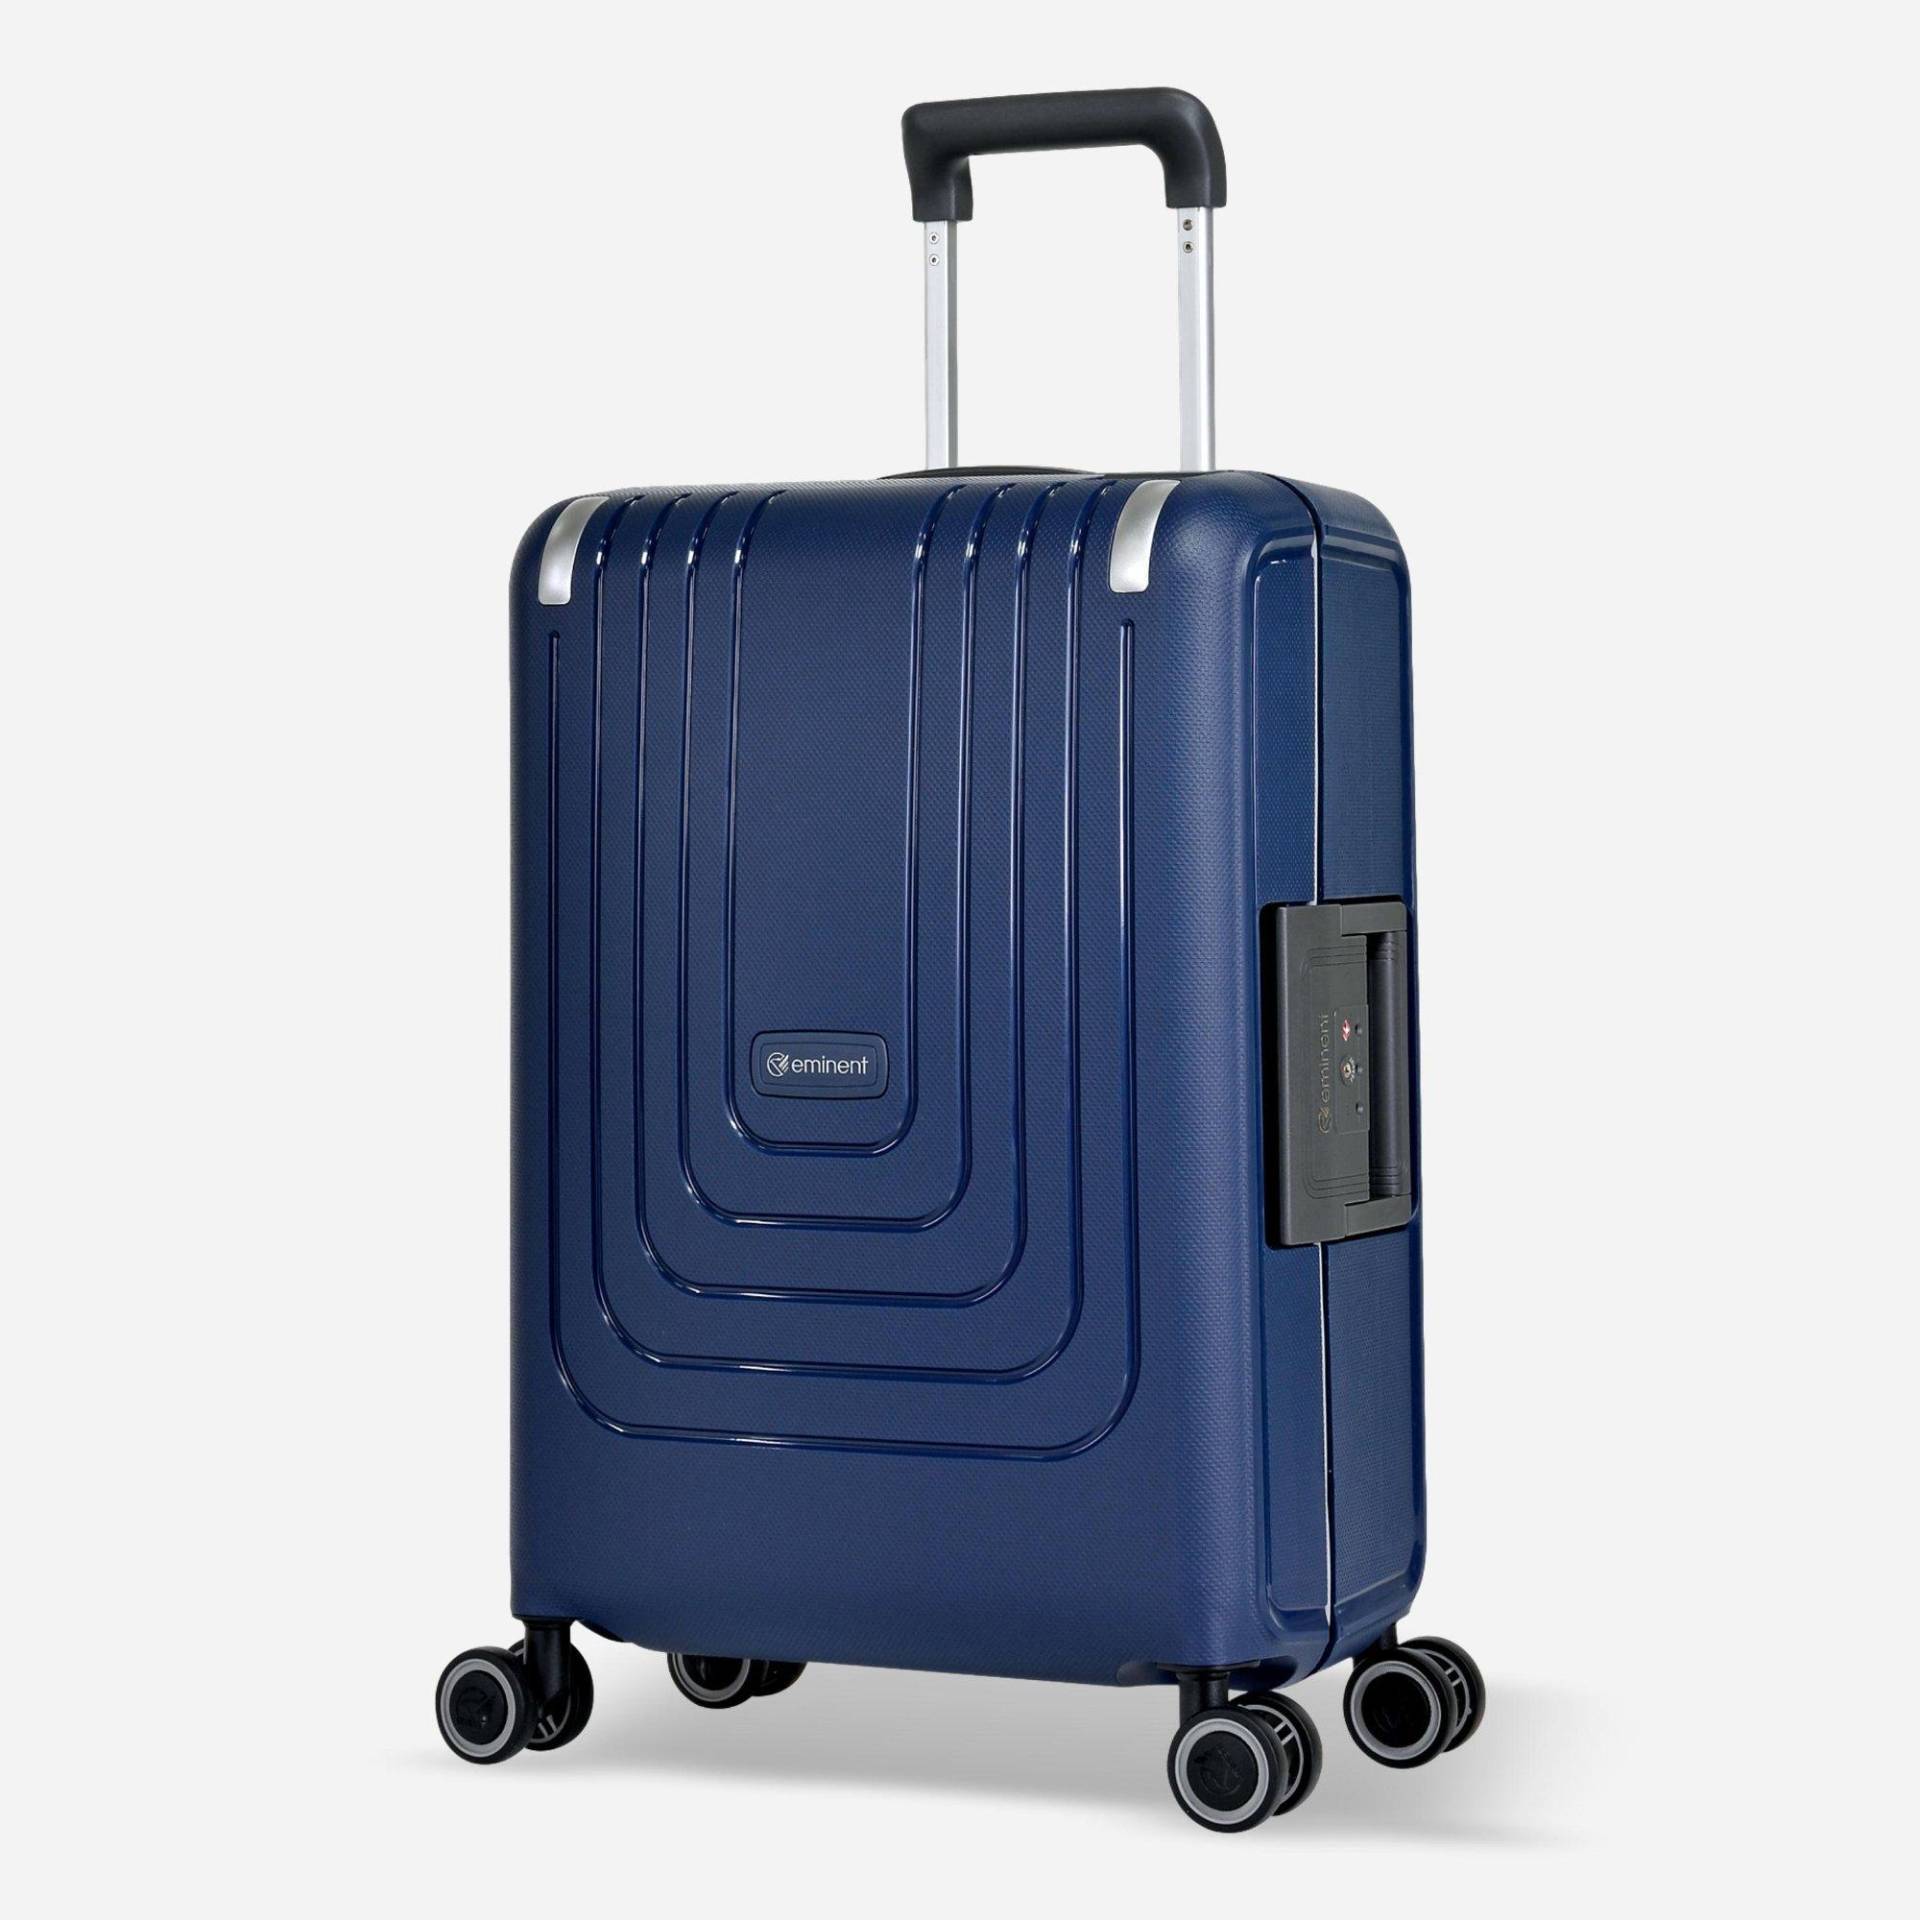 Vertica Handgepäck Koffer 4 Rollen Unisex Blau 55 CM von EMINENT